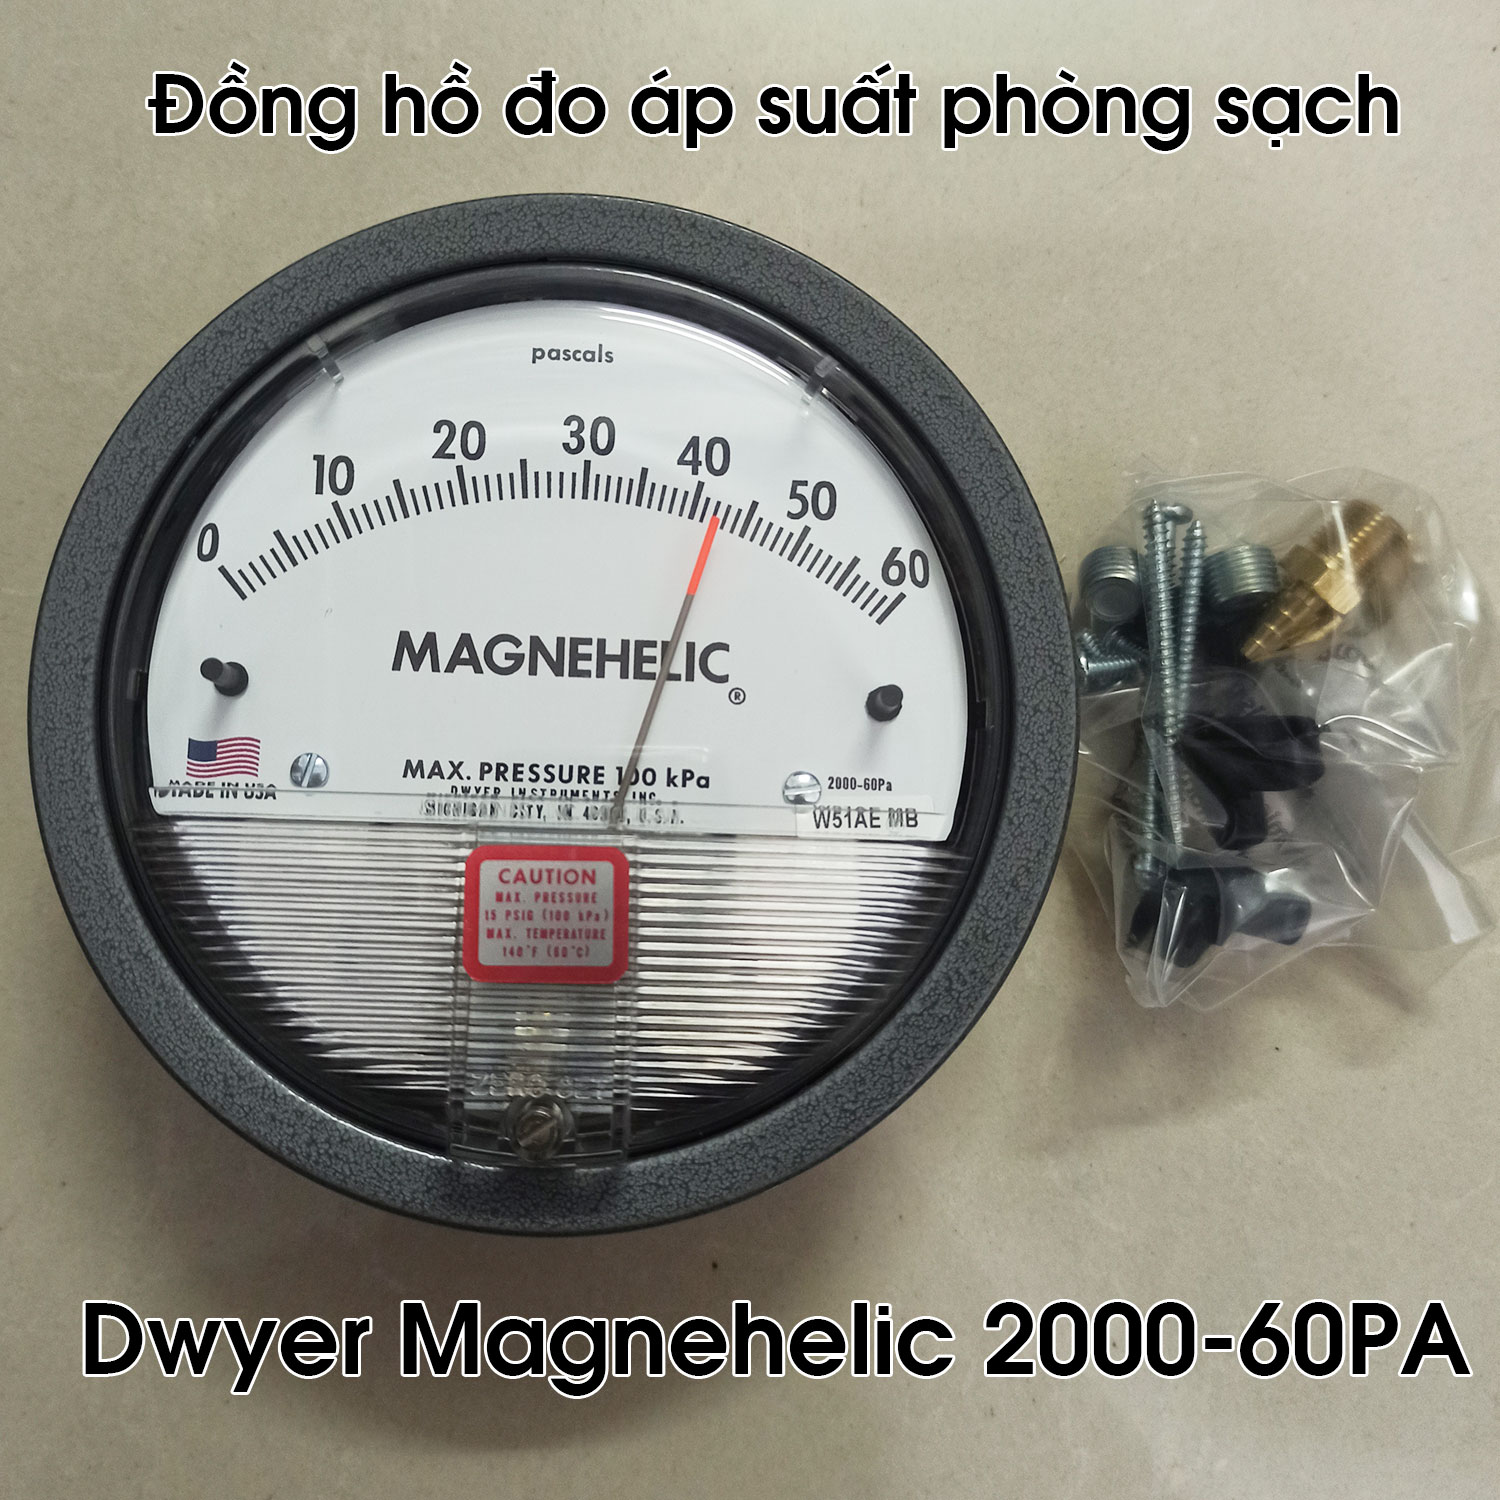 Đồng hồ đo áp suất phòng sạch Dwyer Magnehelic 2000-60PA